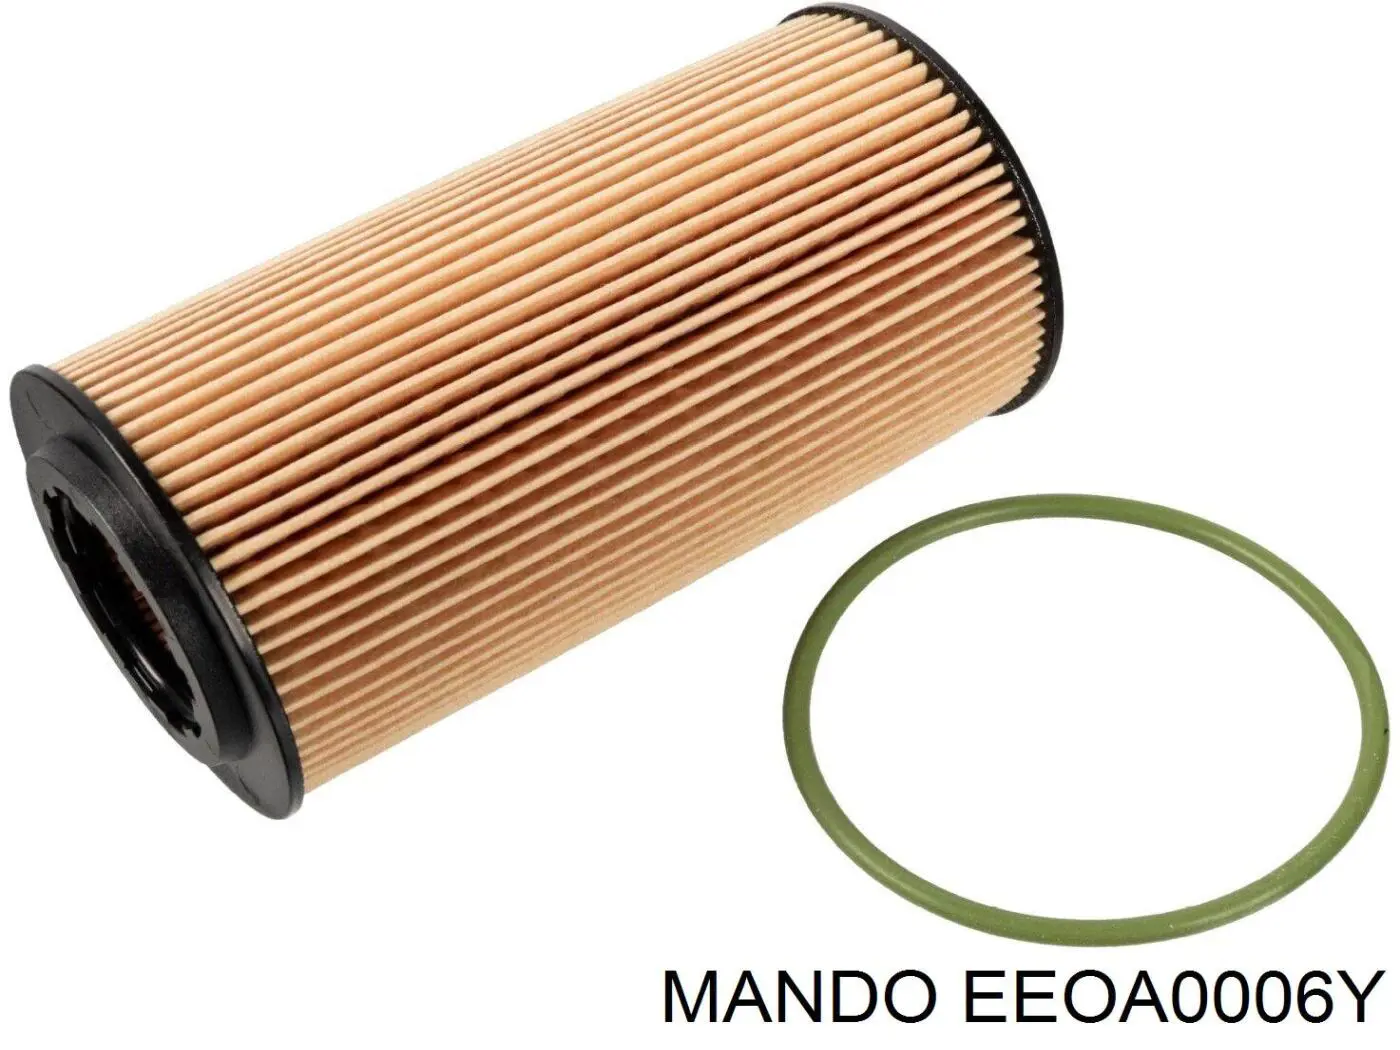 EEOA0006Y Mando масляный фильтр